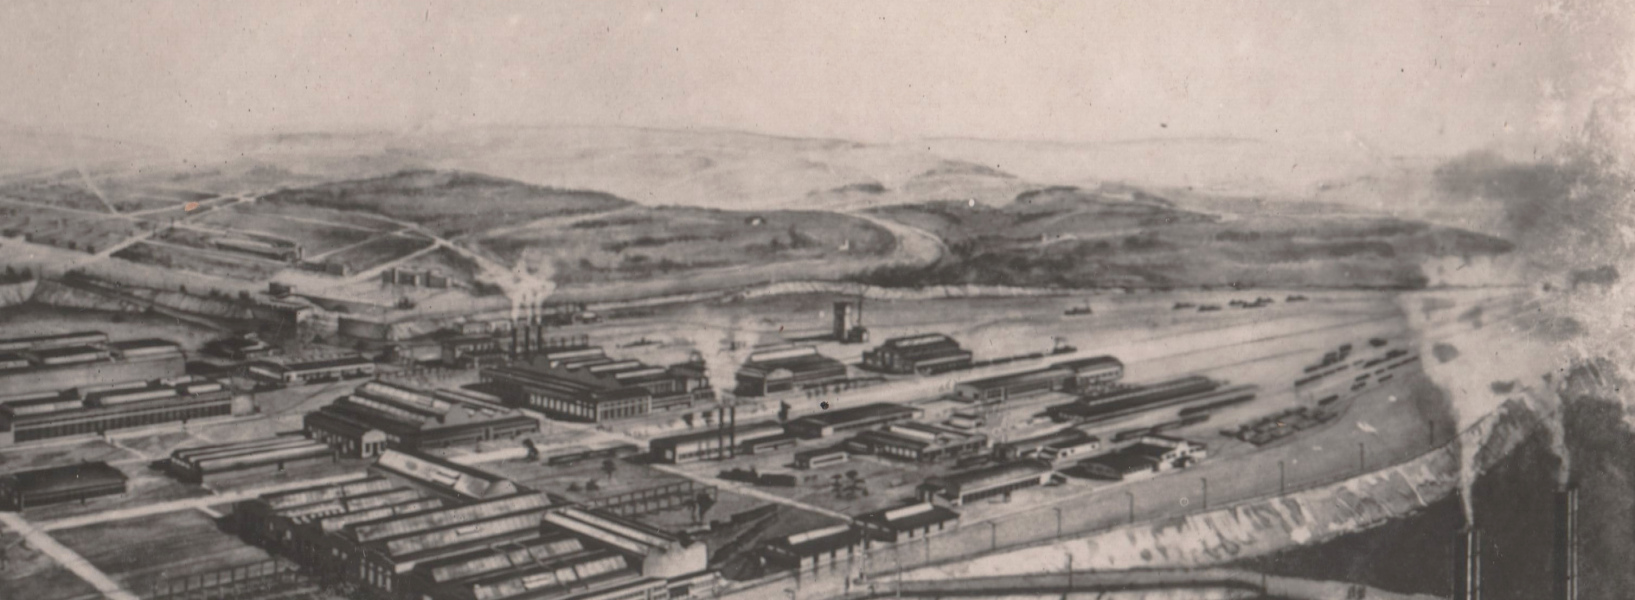 2 июня 1932 г. 90 лет со дня начала строительства Улан-Удэнского ПВЗ (ныне Улан-Удэнский локомотивовагоноремонтный завод, филиал ОАО «Желдорреммаш»)